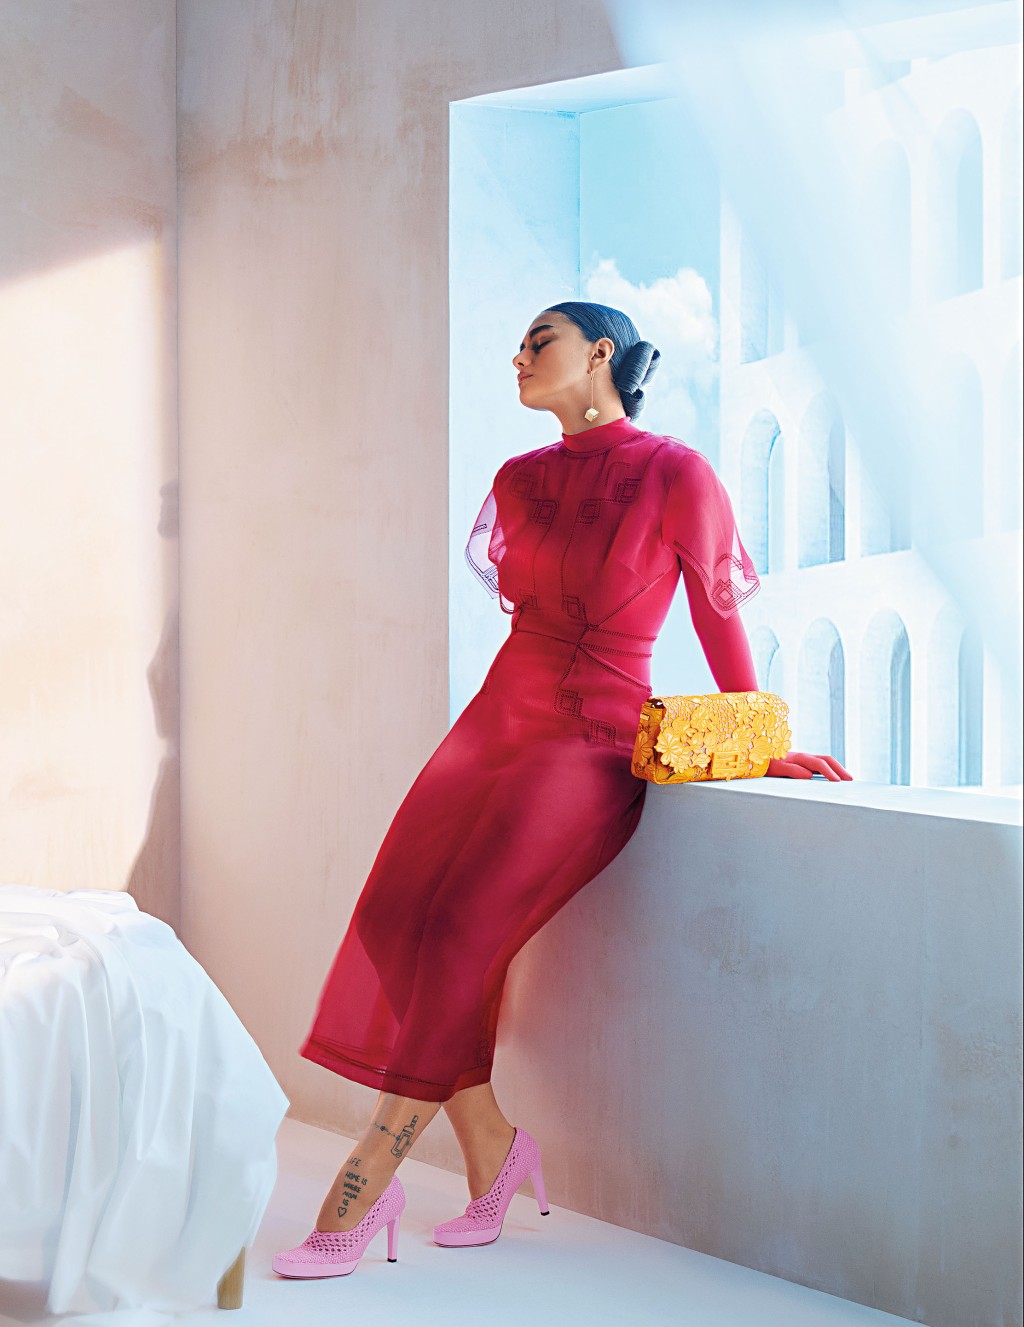 红色丝质连身裙/$36,200，衬以粉红色Elasticated Lace Pumps/$8,500，配衬立体花饰的橙色Baguette Bag/$29,800，为优雅的造型带来抢眼焦点。(Fendi)